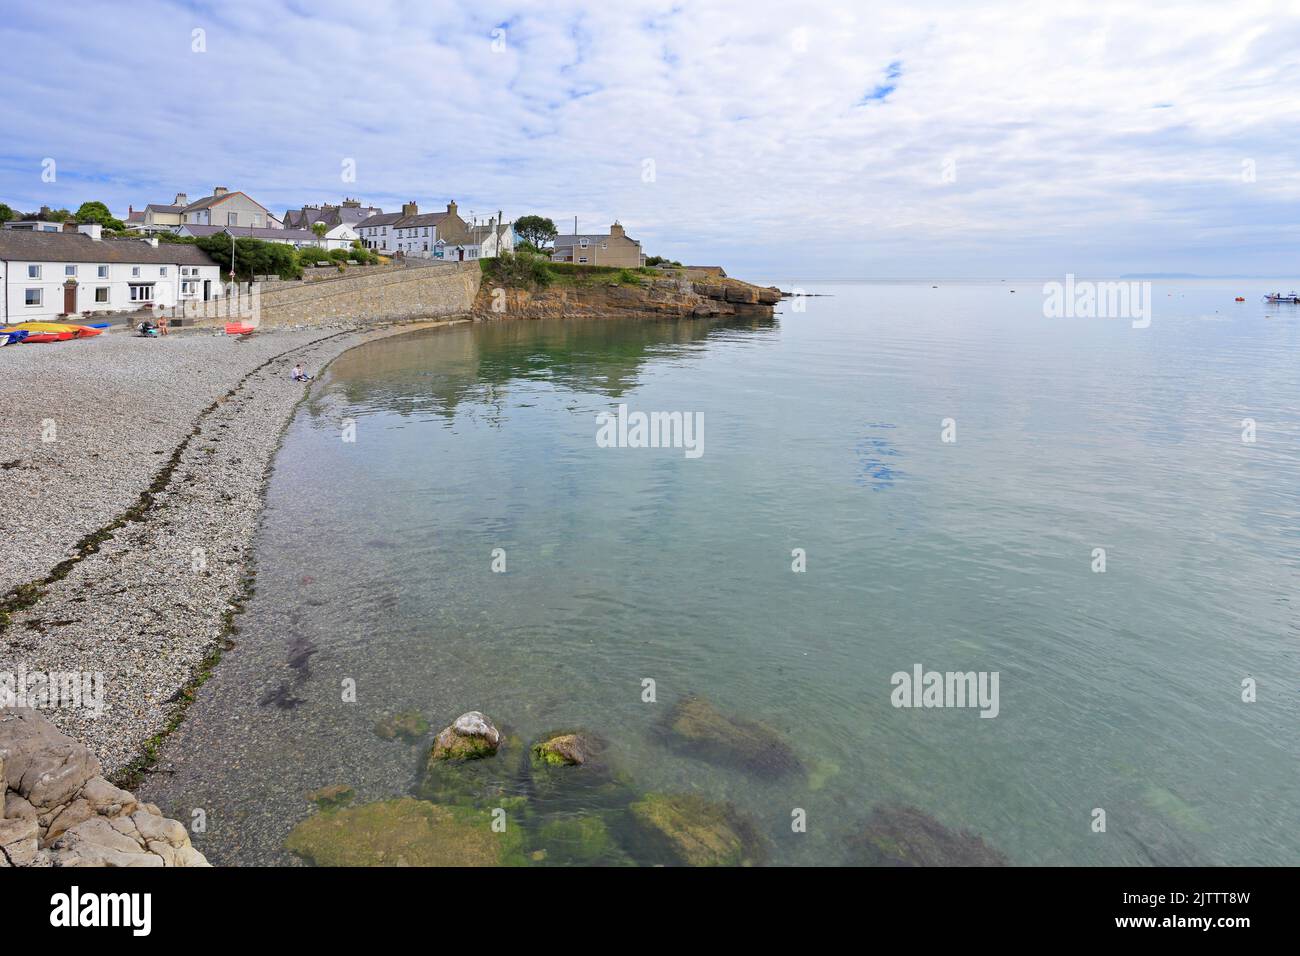 Port de Moelfre, île d'Anglesey, Ynys mon, pays de Galles du Nord, Royaume-Uni. Banque D'Images